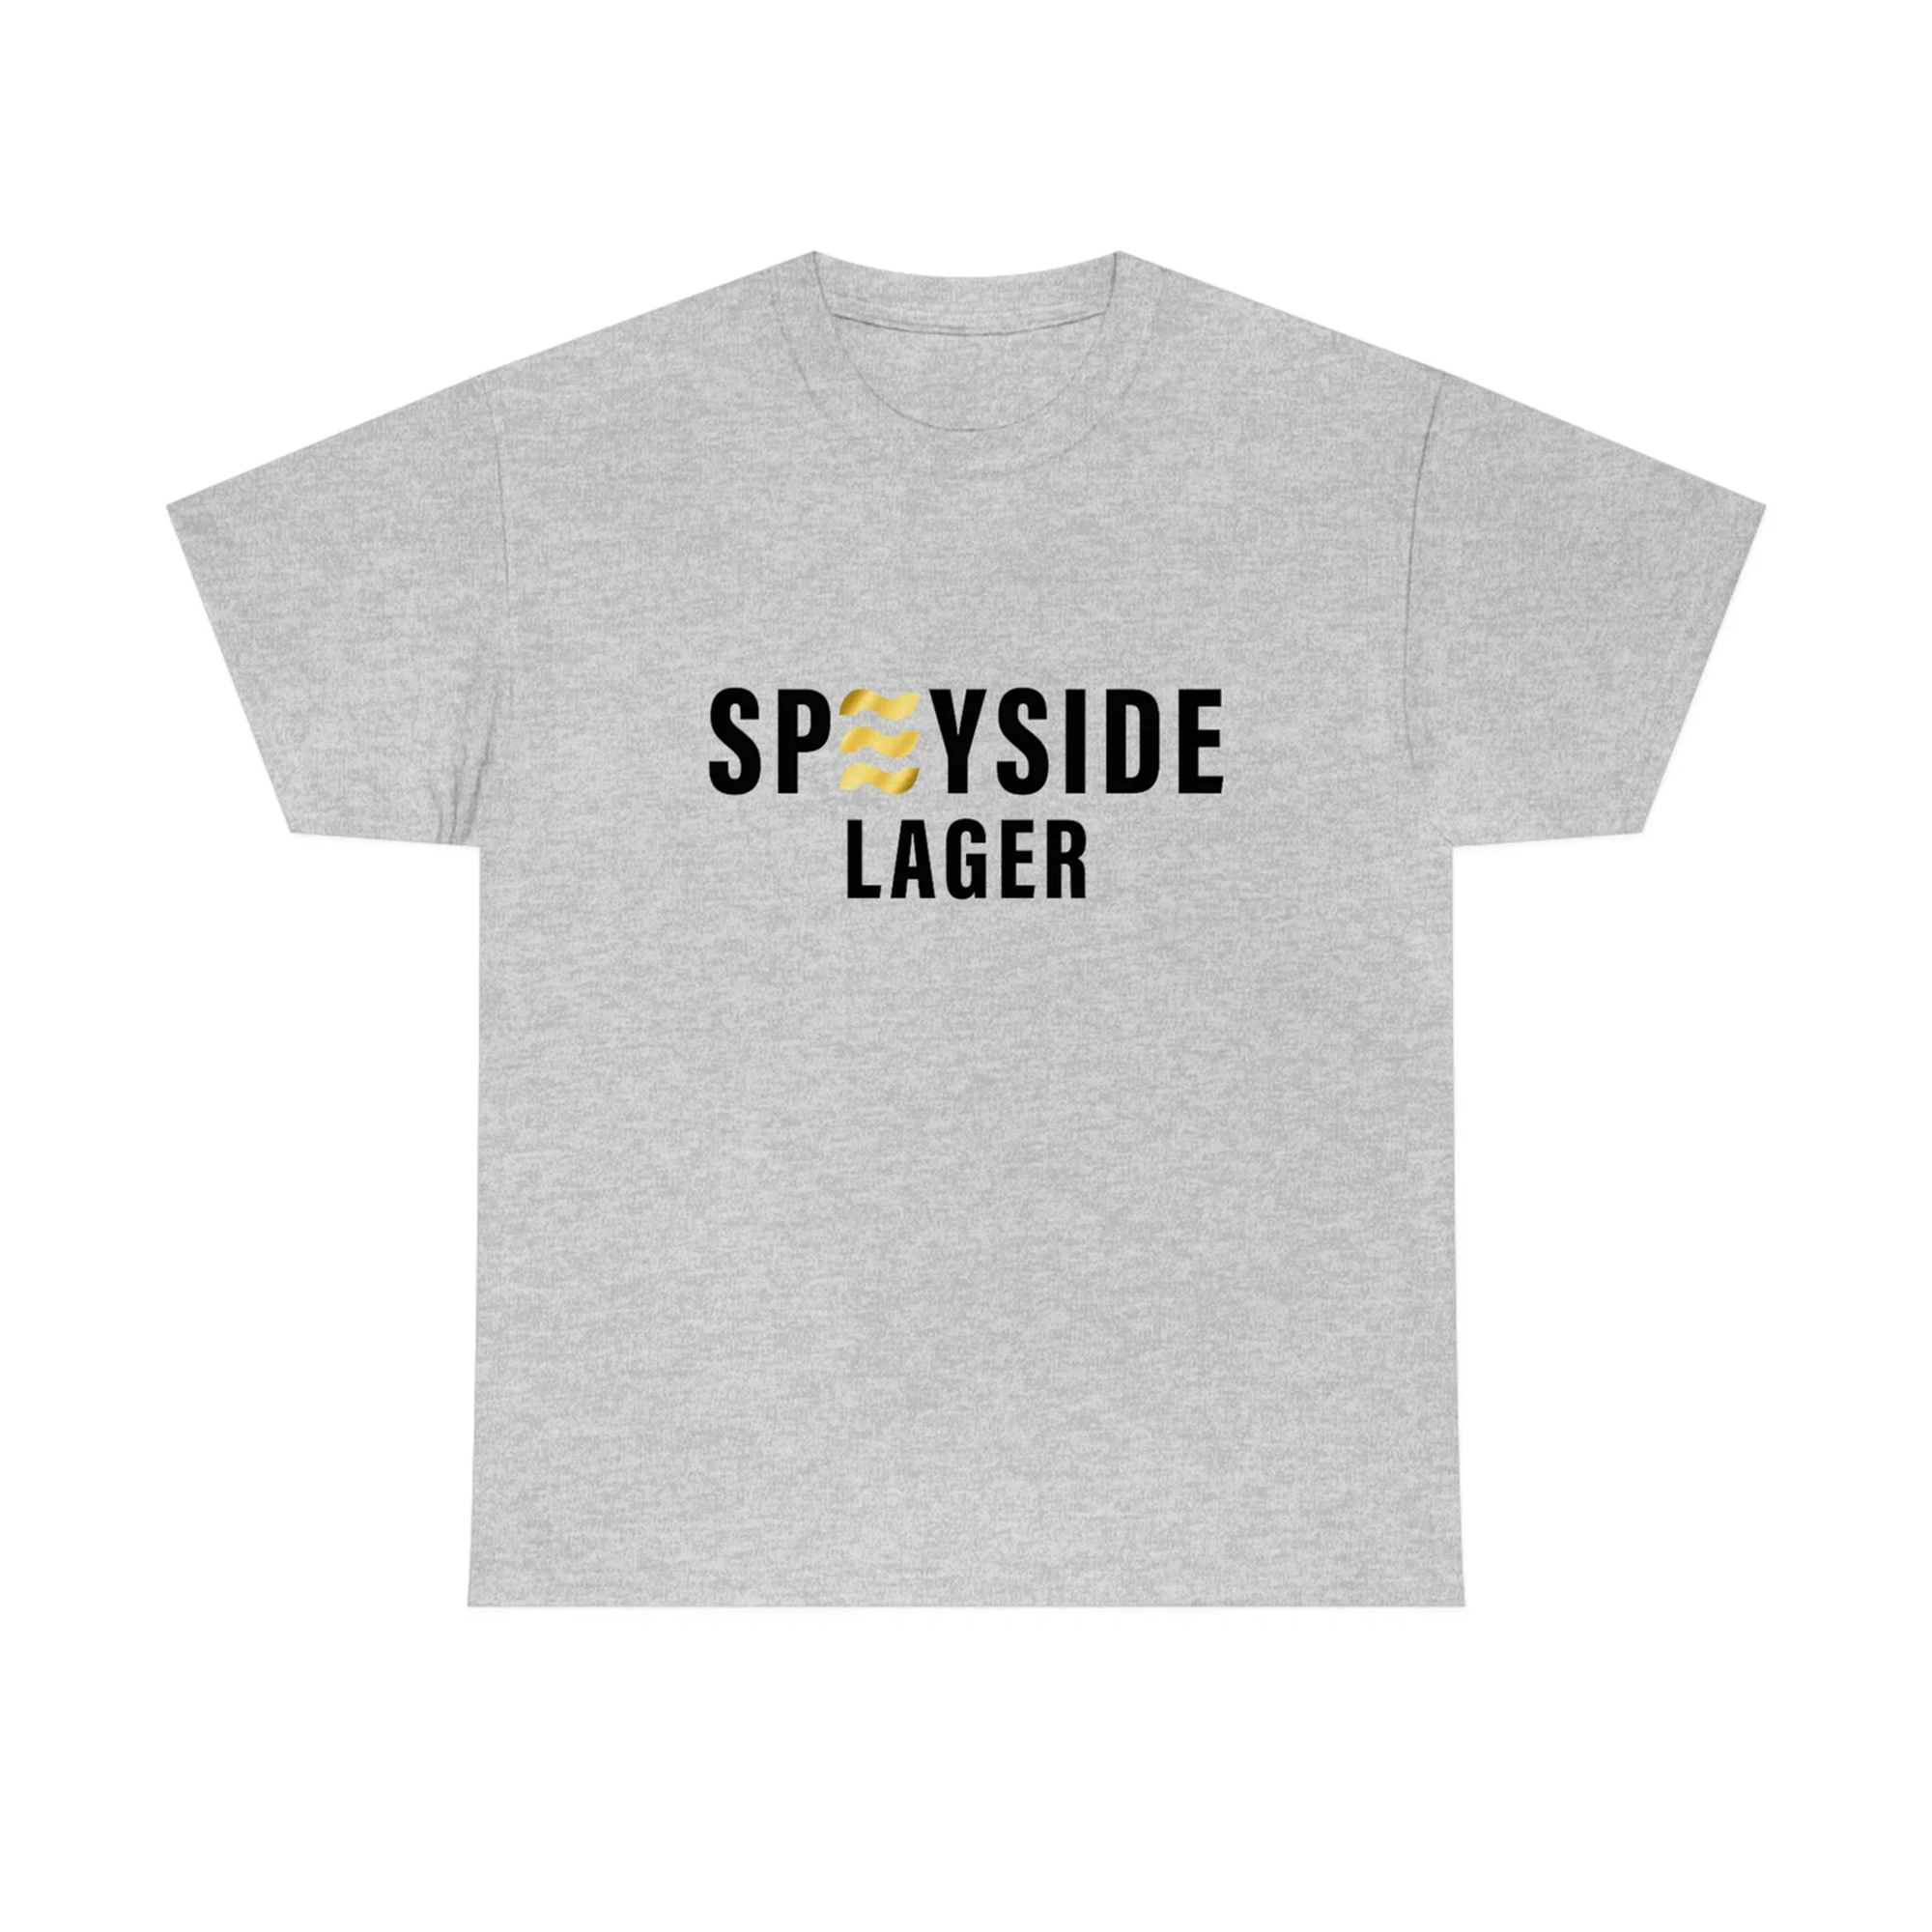 Speyside Lager Tshirt